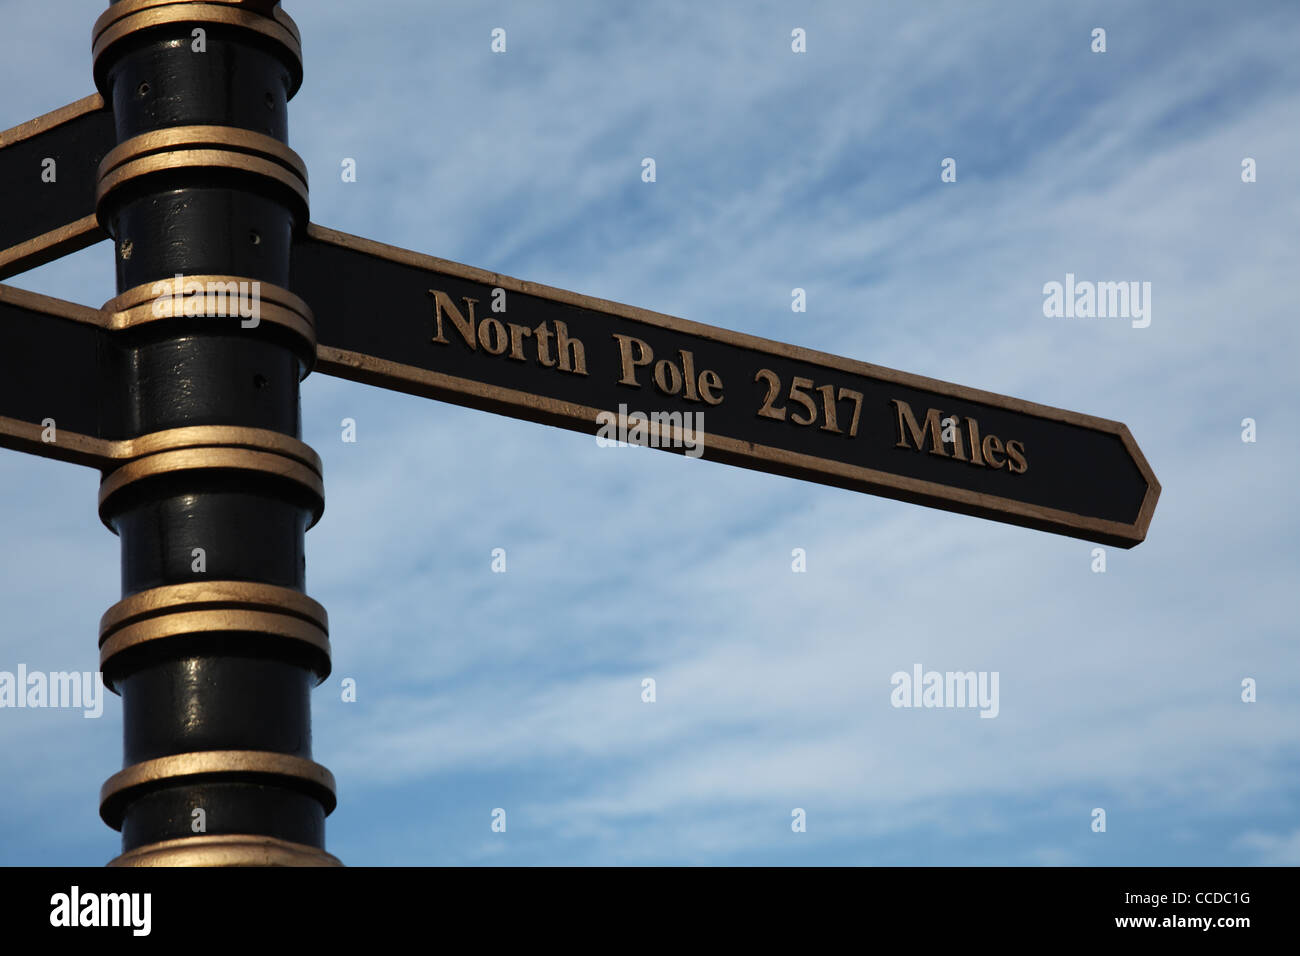 Firmar junto al meridiano de Greenwich instalación en Cleethorpes, indicando la dirección al Polo Norte Foto de stock